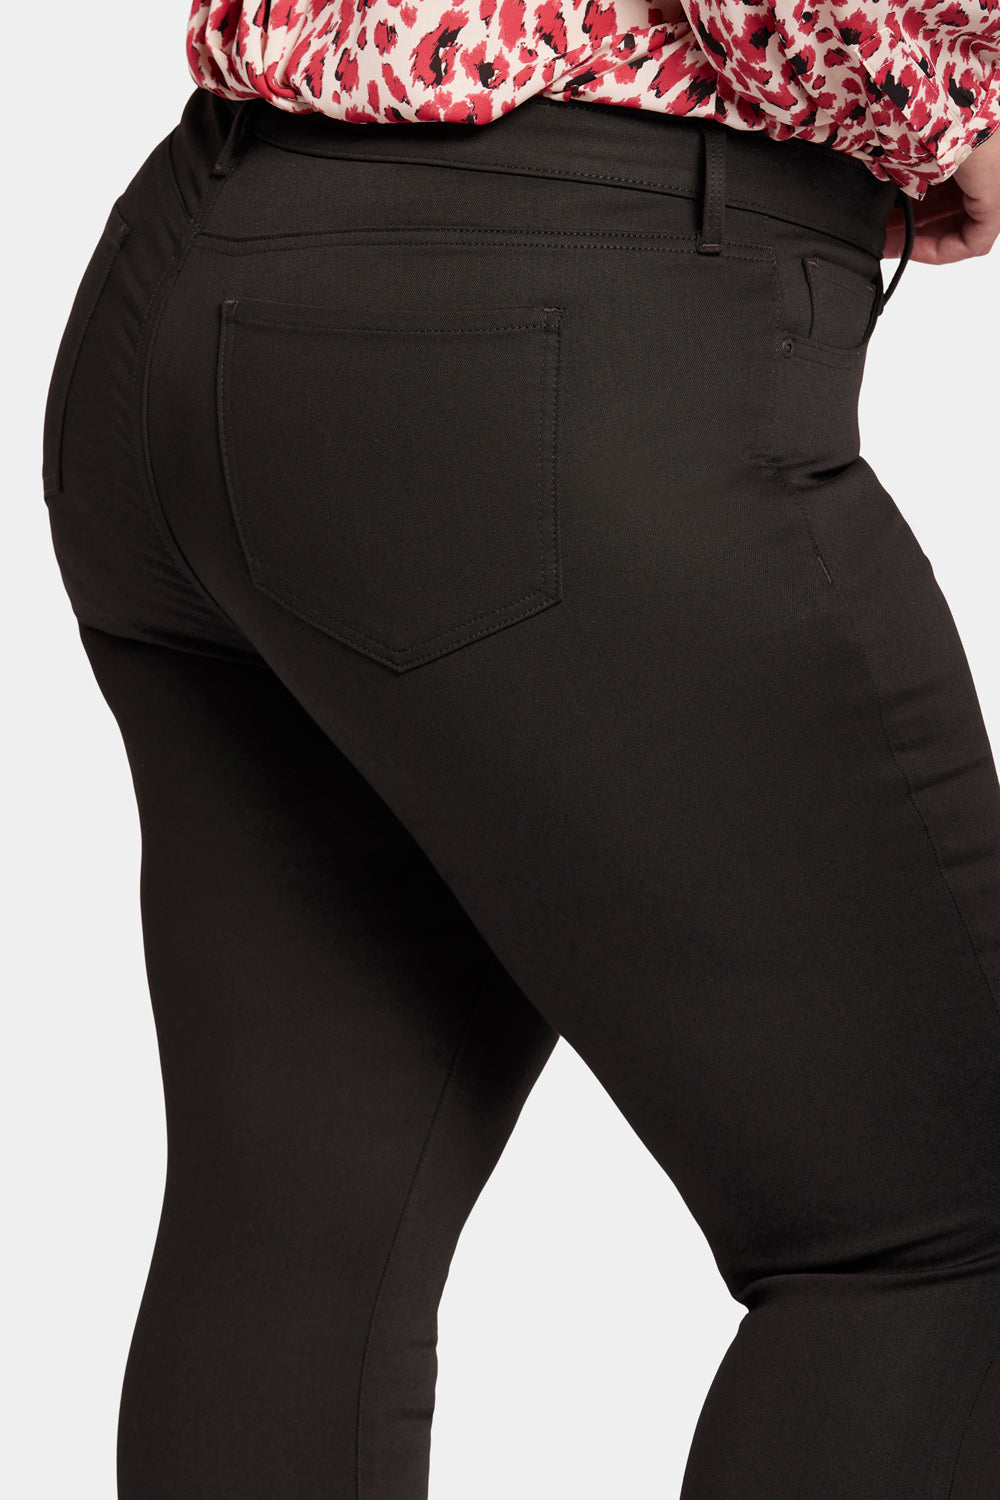 NYDJ Ami Skinny Jeans In Plus Size In BlackLast™ Denim - Black Rinse